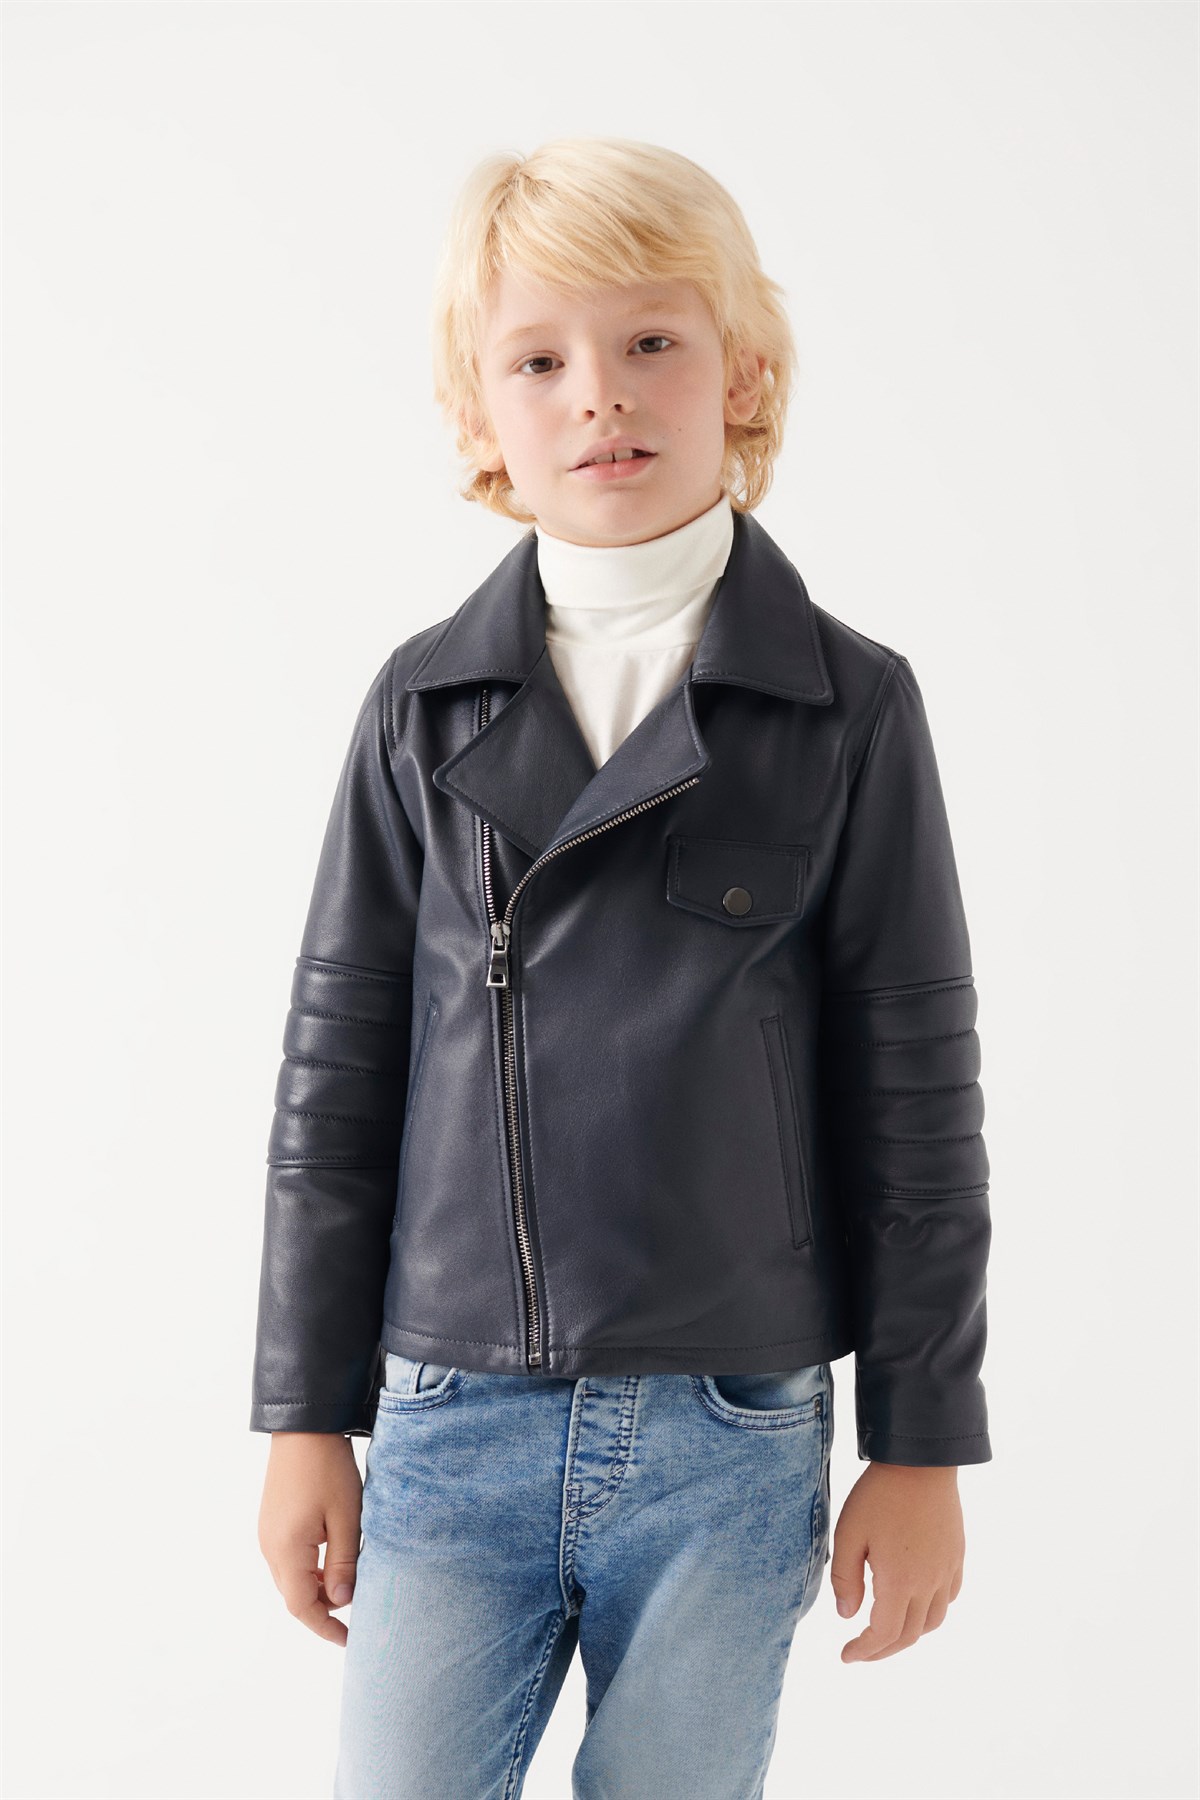 JONNY Boys Navy Blue Leather Jacket | Boys Leather and Shearling Jacket ...